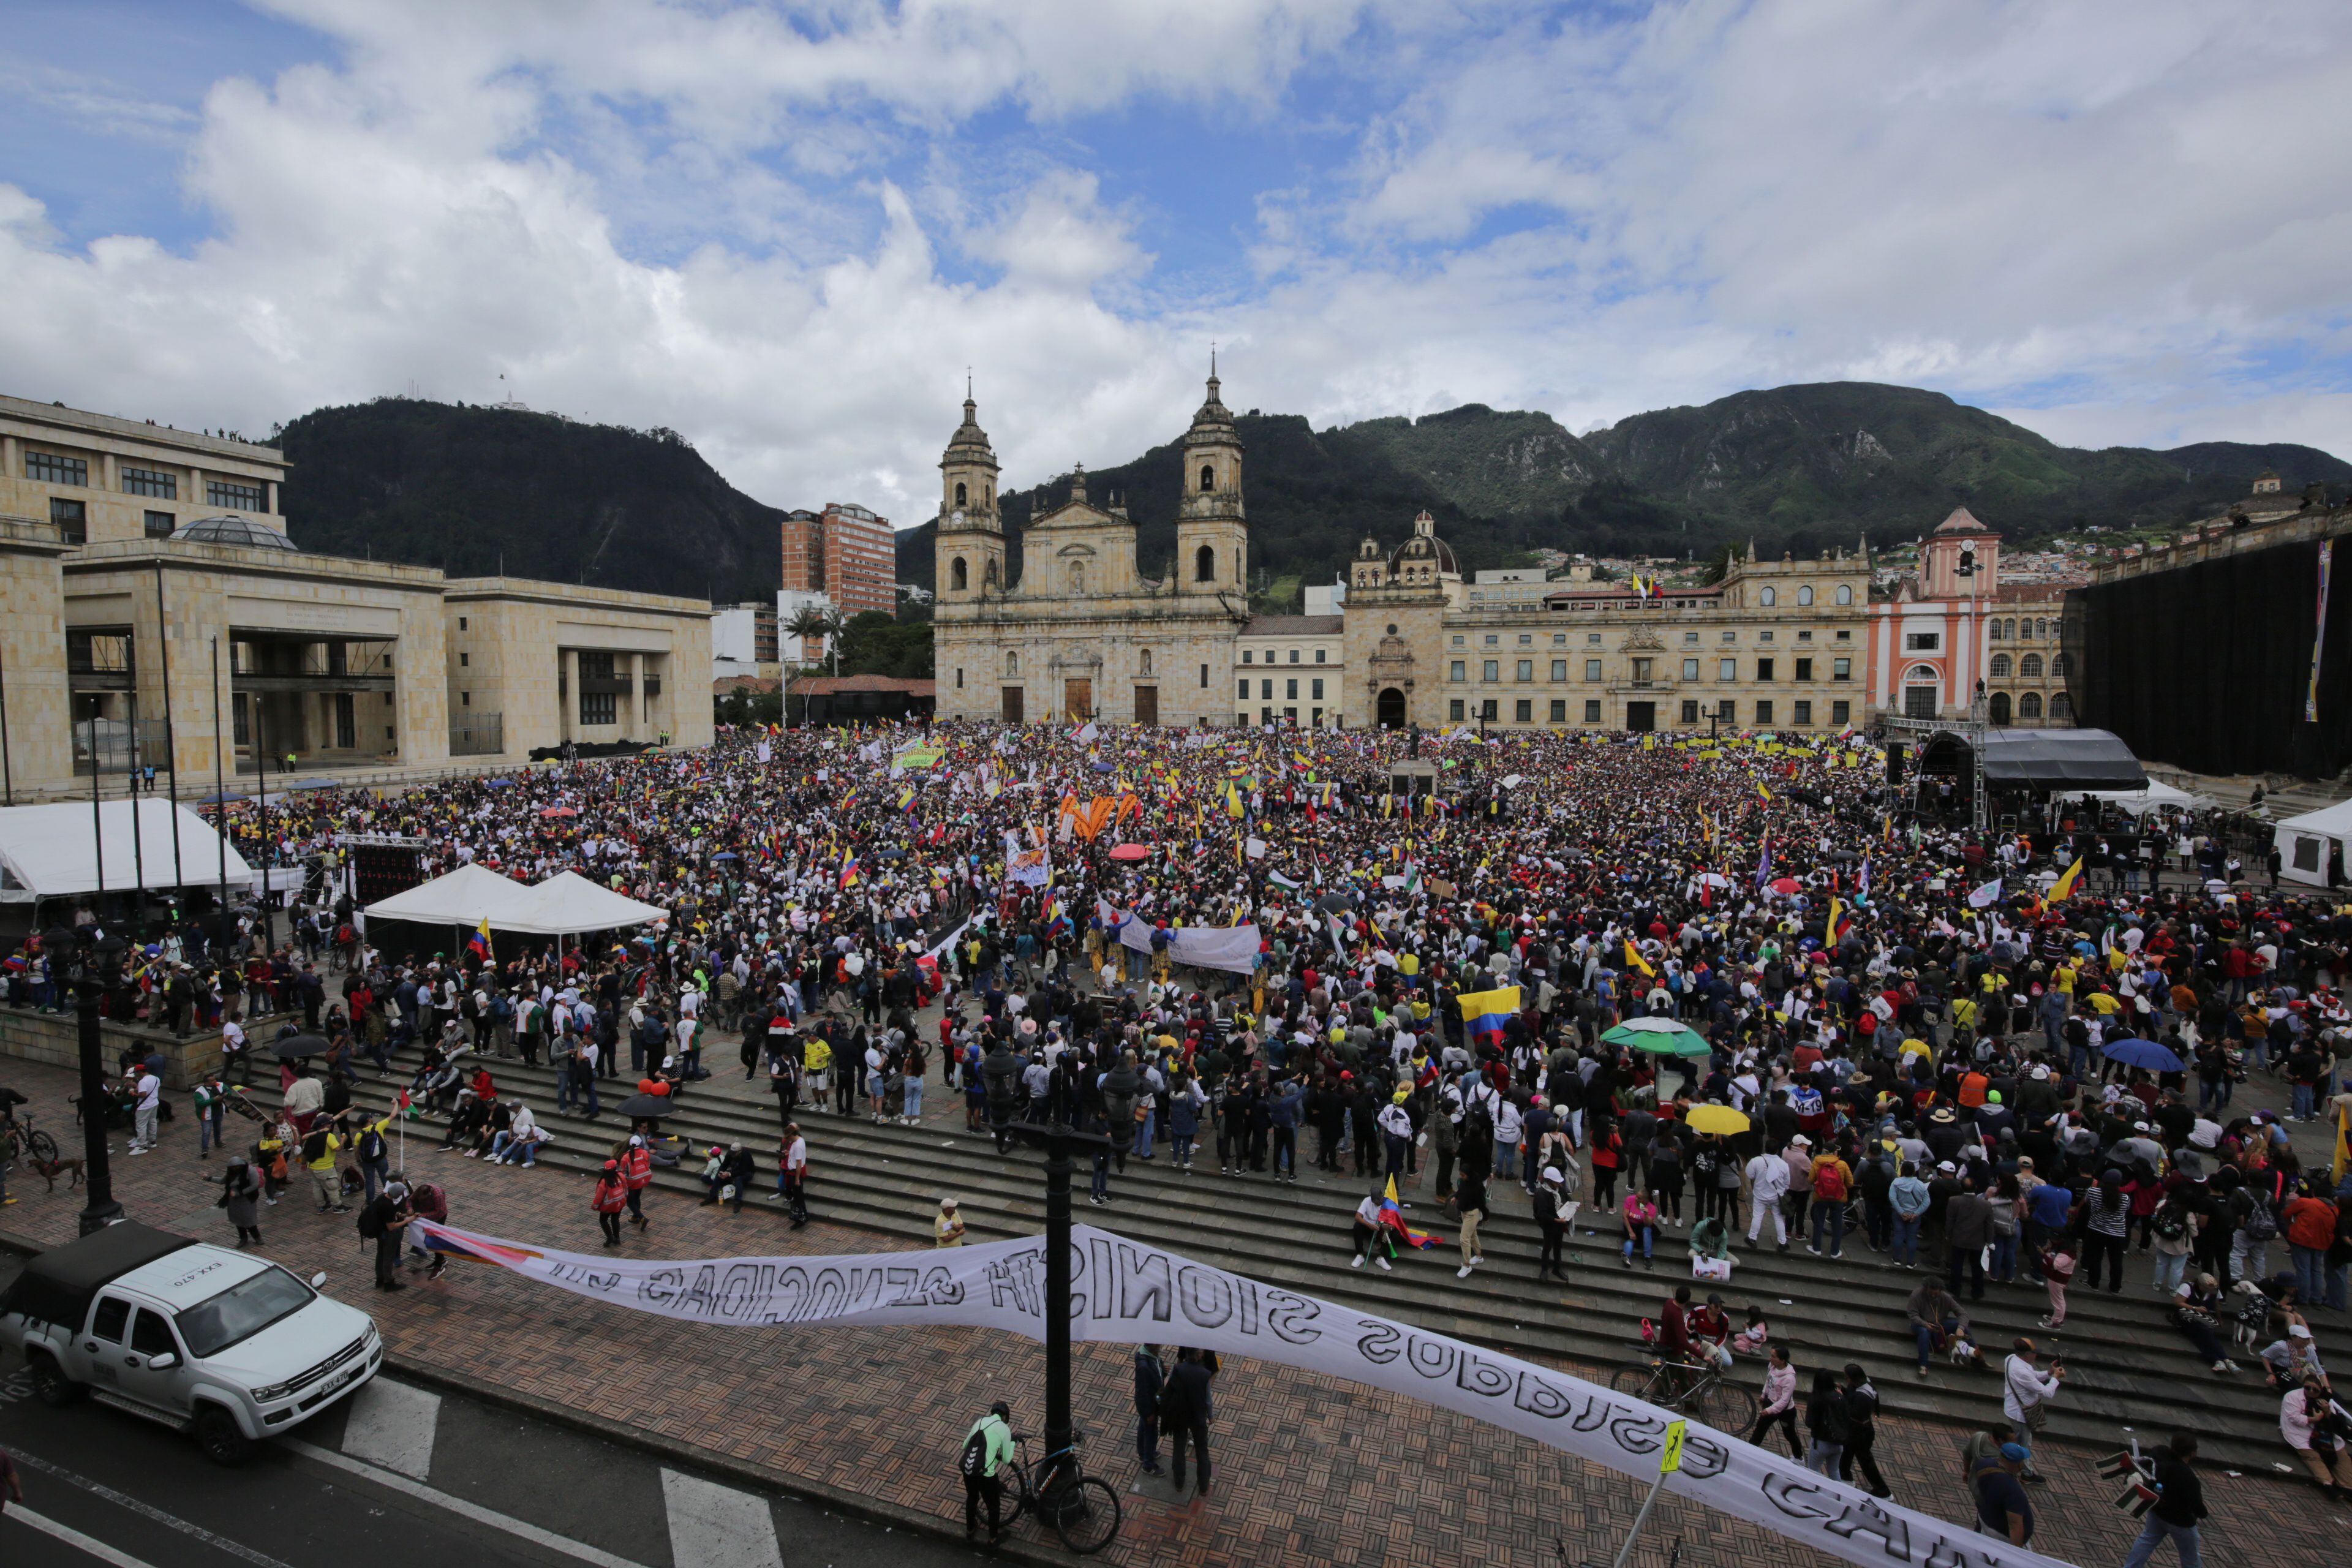 marcha del 1 de mayo en bogotá: así fue el discurso de petro en la plaza de bolívar; arremetió contra uribe y keralty, y destacó sus reformas